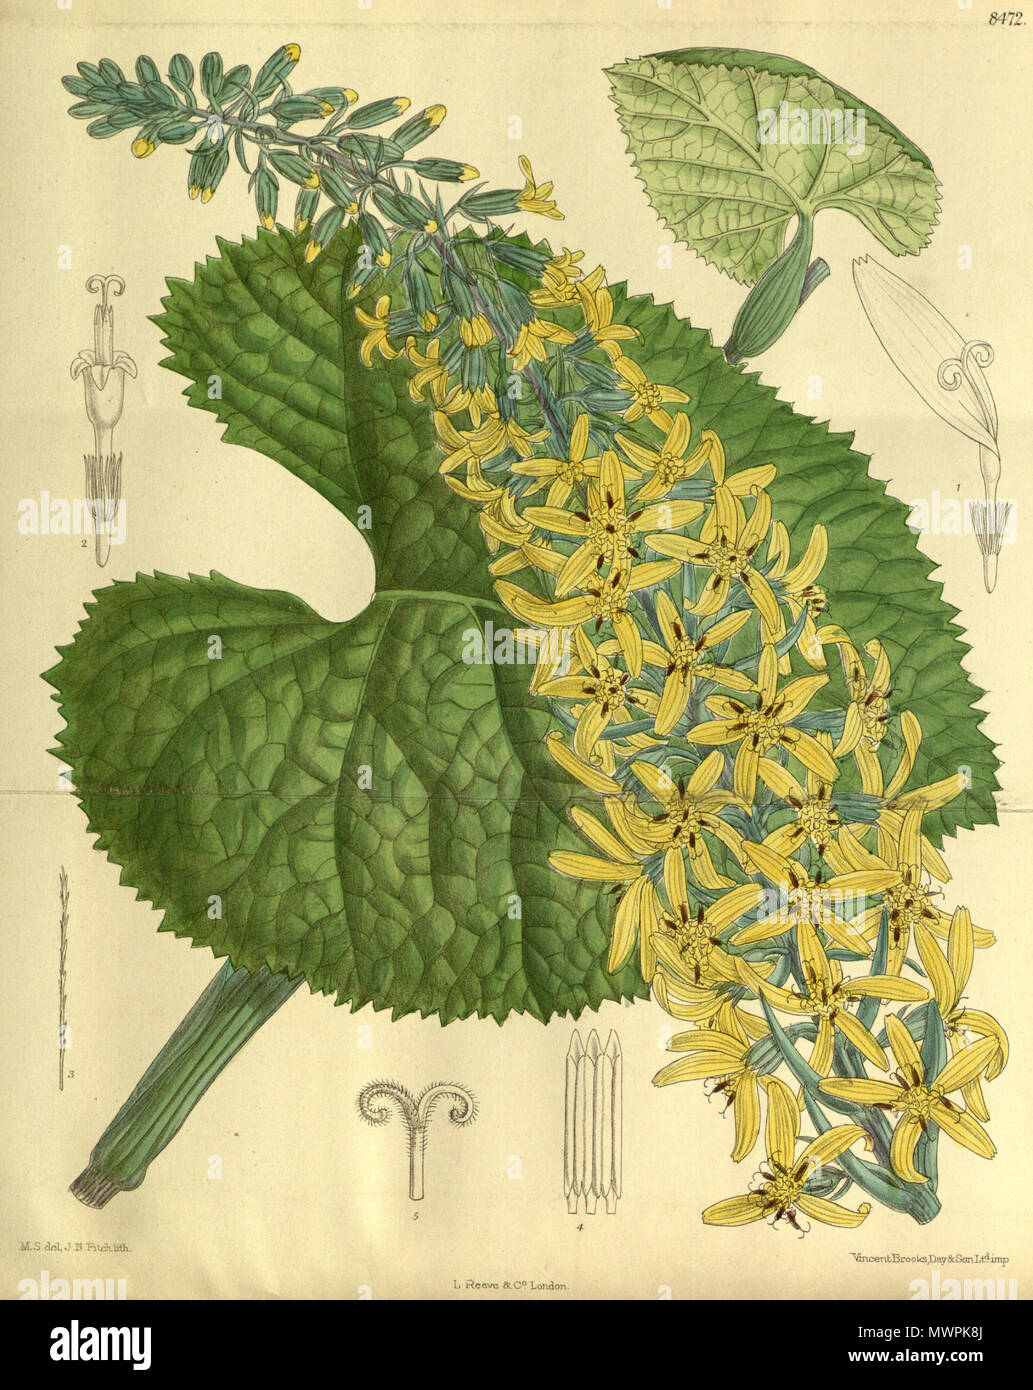 . Senecio stenocephalus (= Ligularia stenocephala), Asteraceae . 1913. M.S. del, J.N.Fitch, lith. 551 Senecio stenocephalus 139-8472 Stock Photo